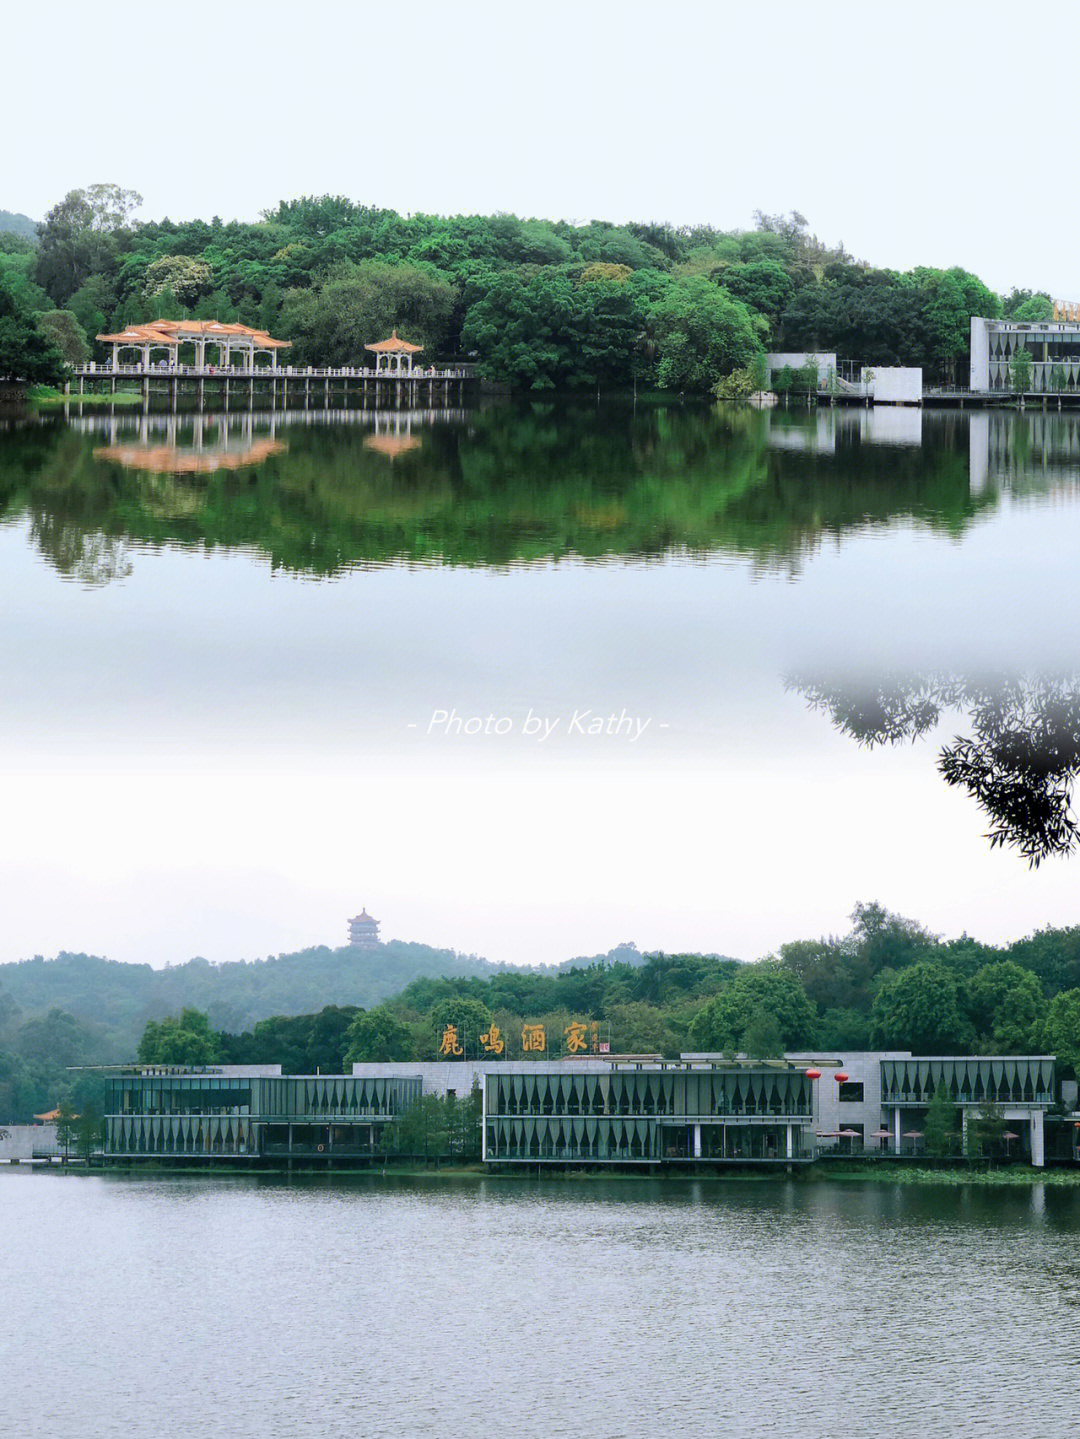 广州大型人工湖之一,园林里鸟语花香绿树成荫空气清新,闹市里的天然